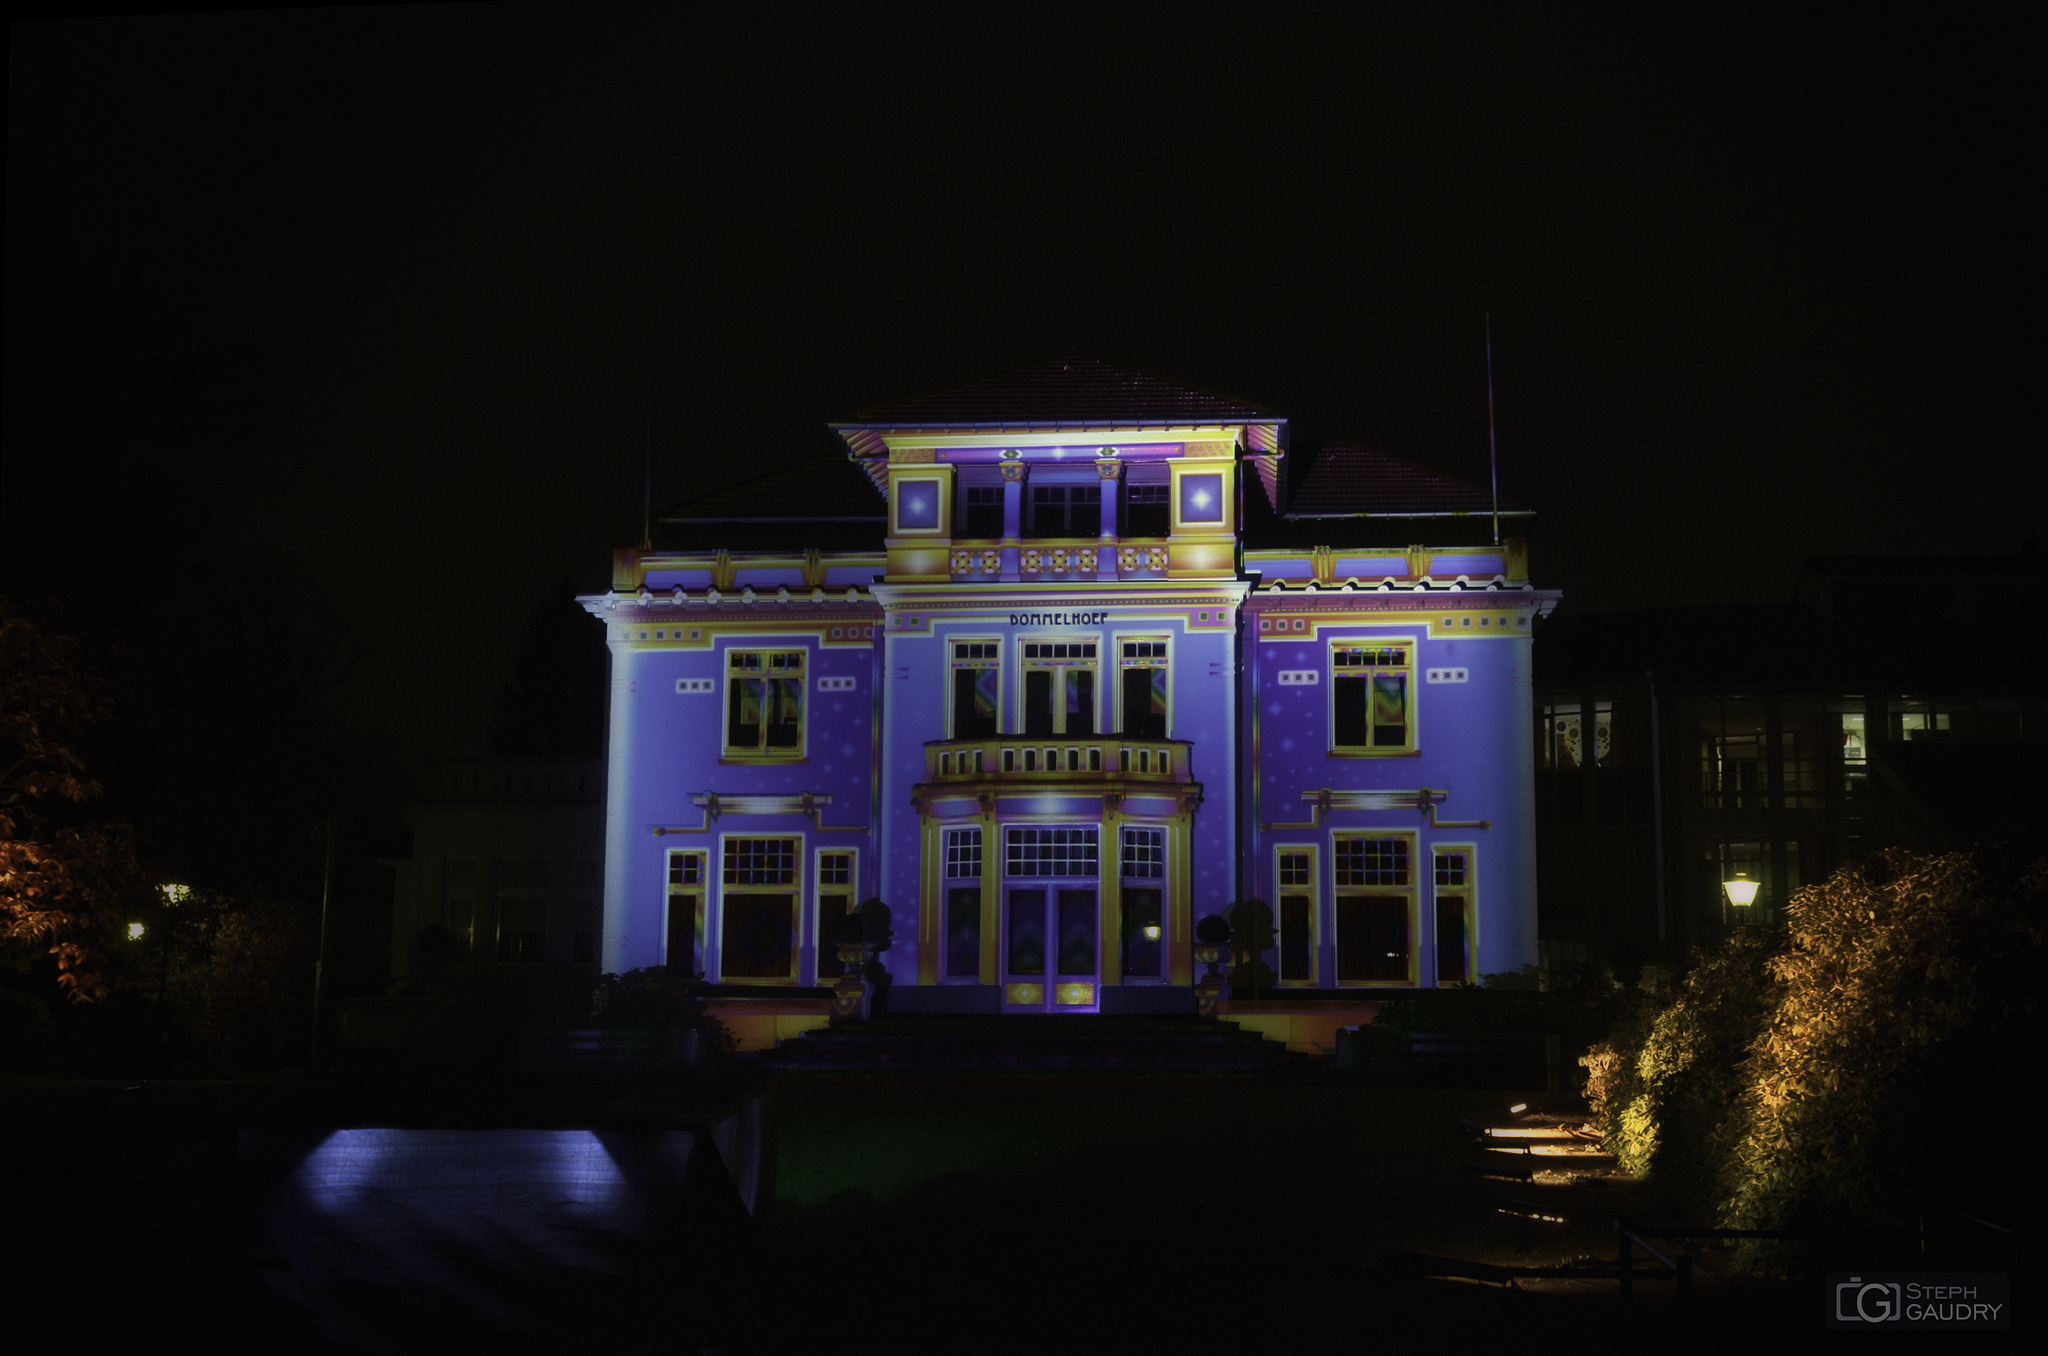 Eindhoven glow 2013 - CHROMOLITHE (v1) [Cliquez pour lancer le diaporama]